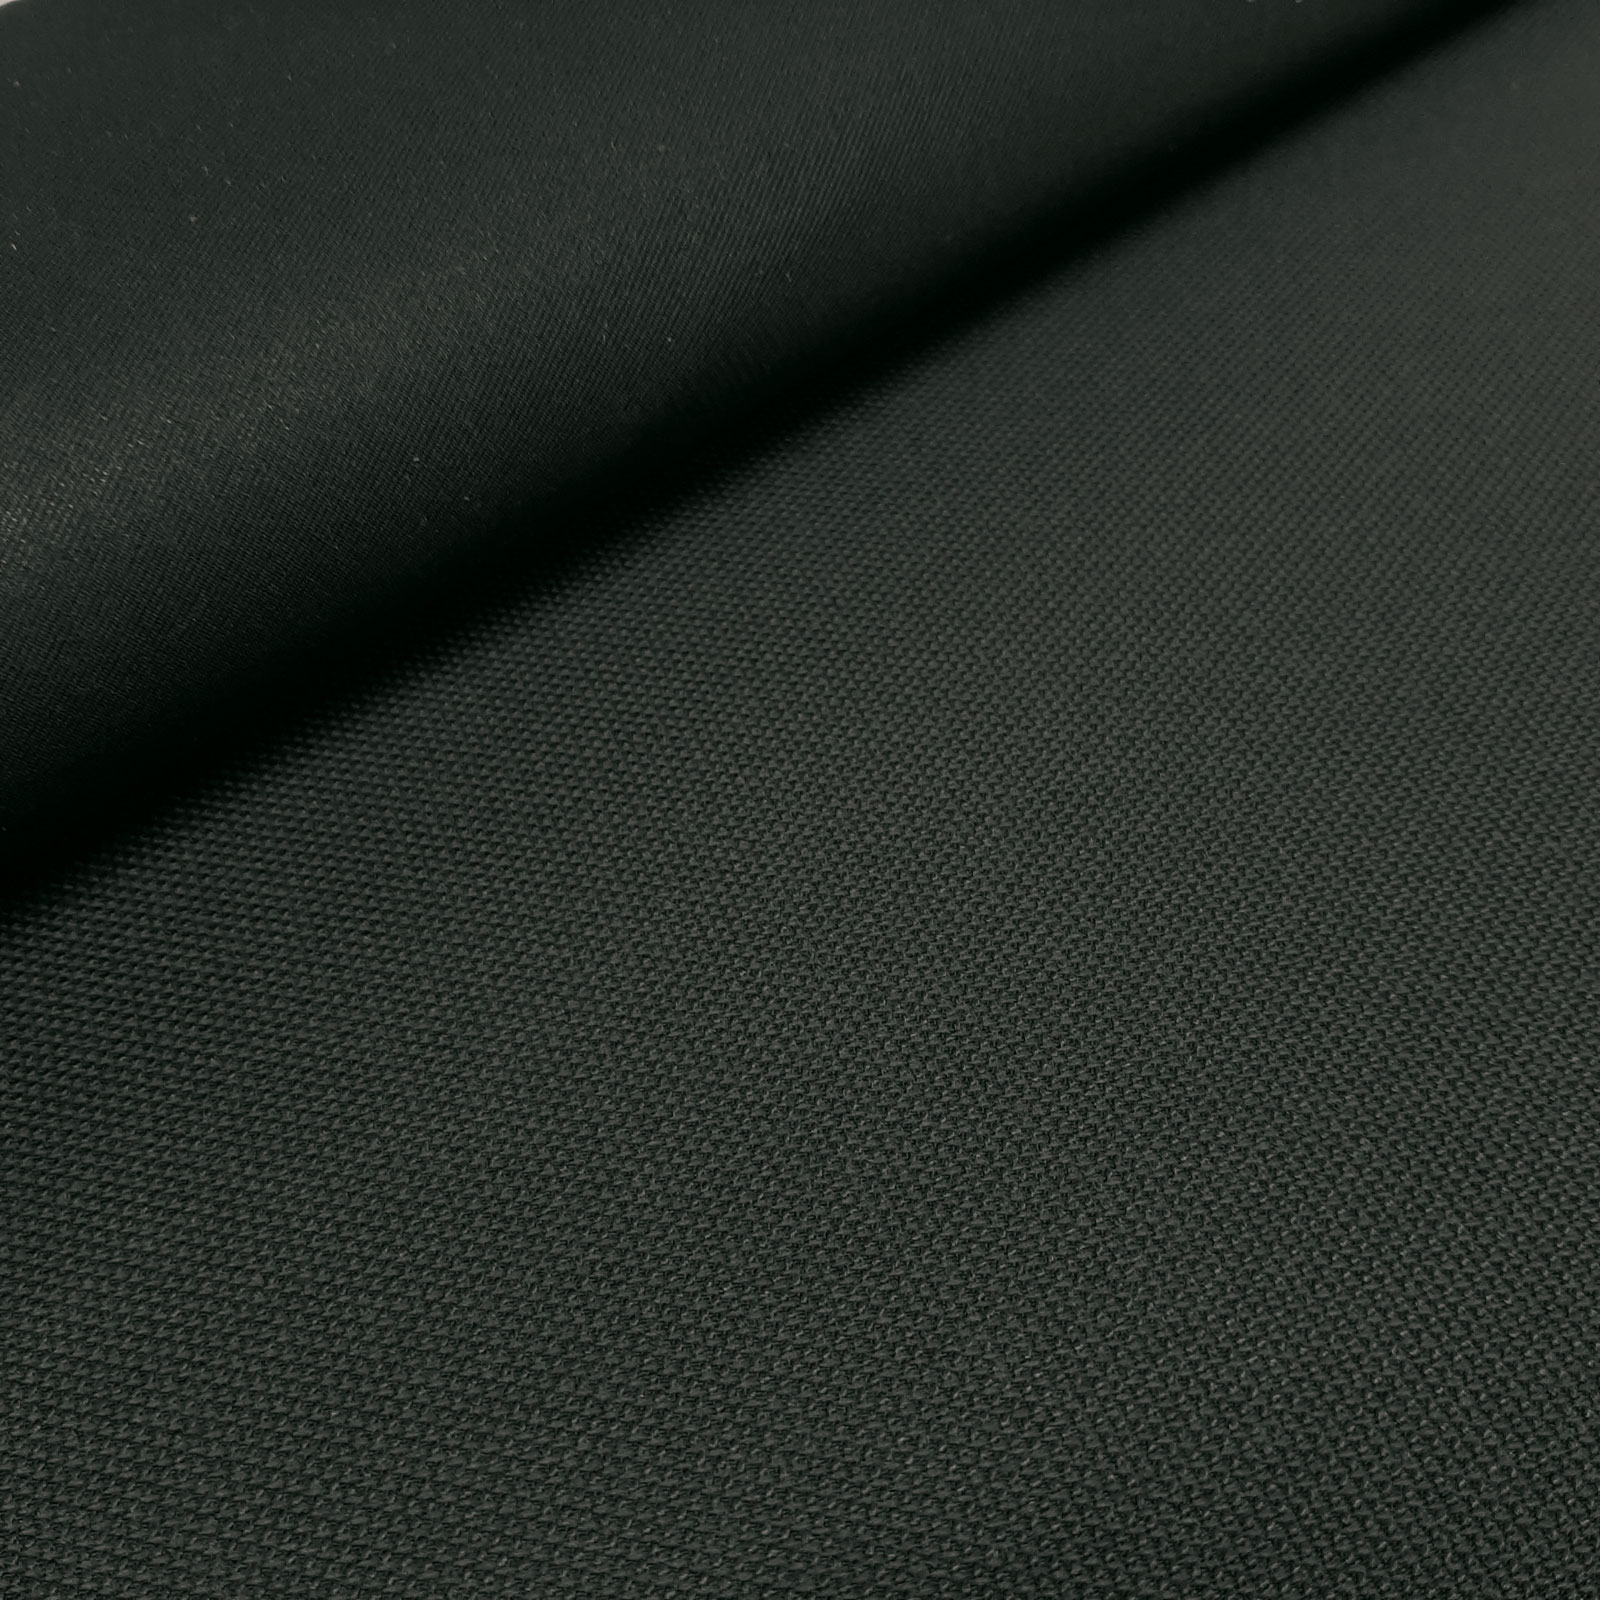 Alonsos - Laminado Keprotec® de 3 camadas – Private Black por 10 cm